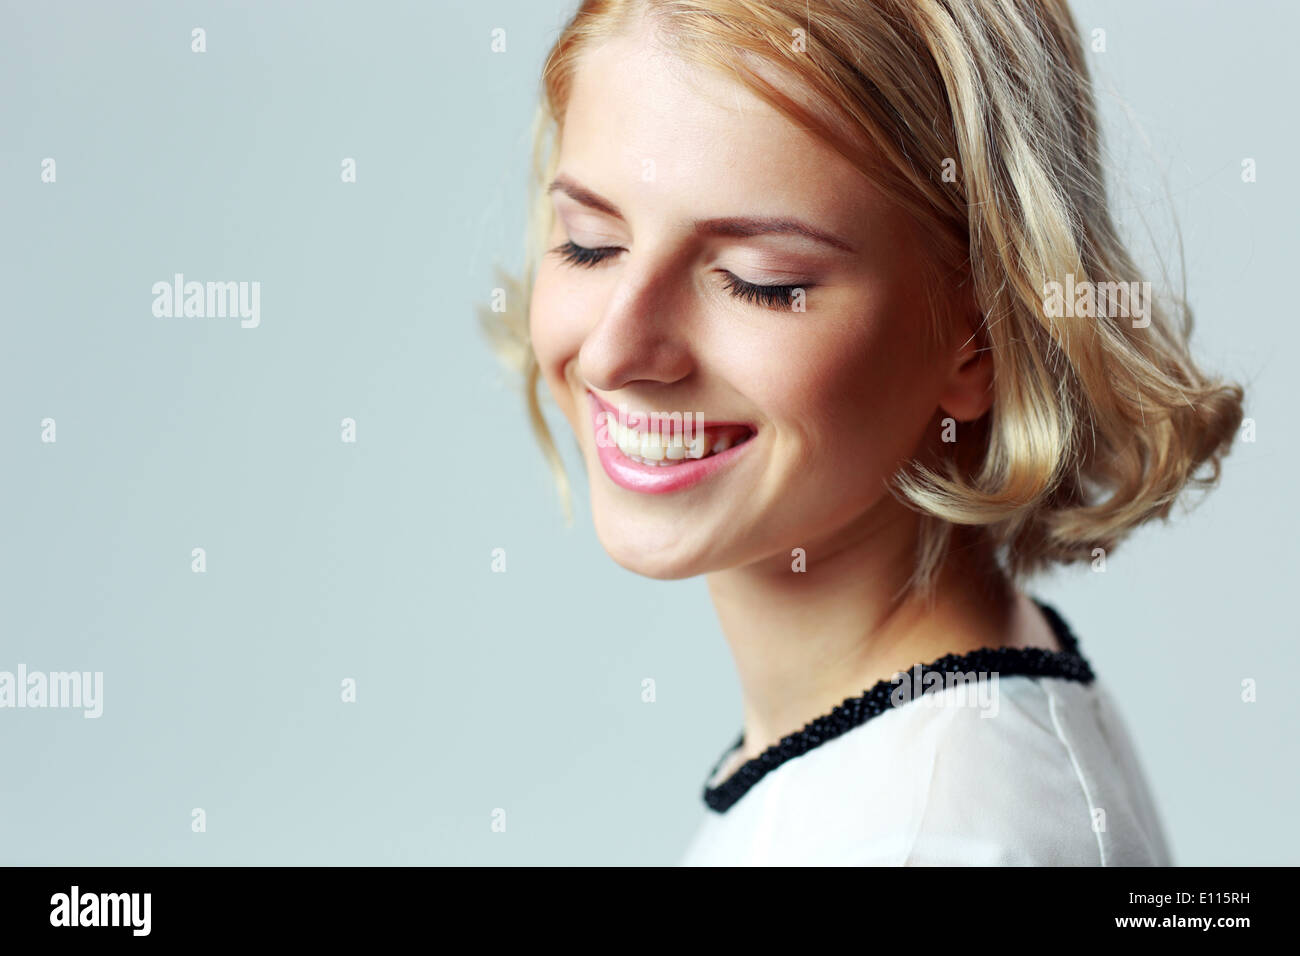 Closeup portrait of a smiling woman with closed eyes sur fond gris Banque D'Images